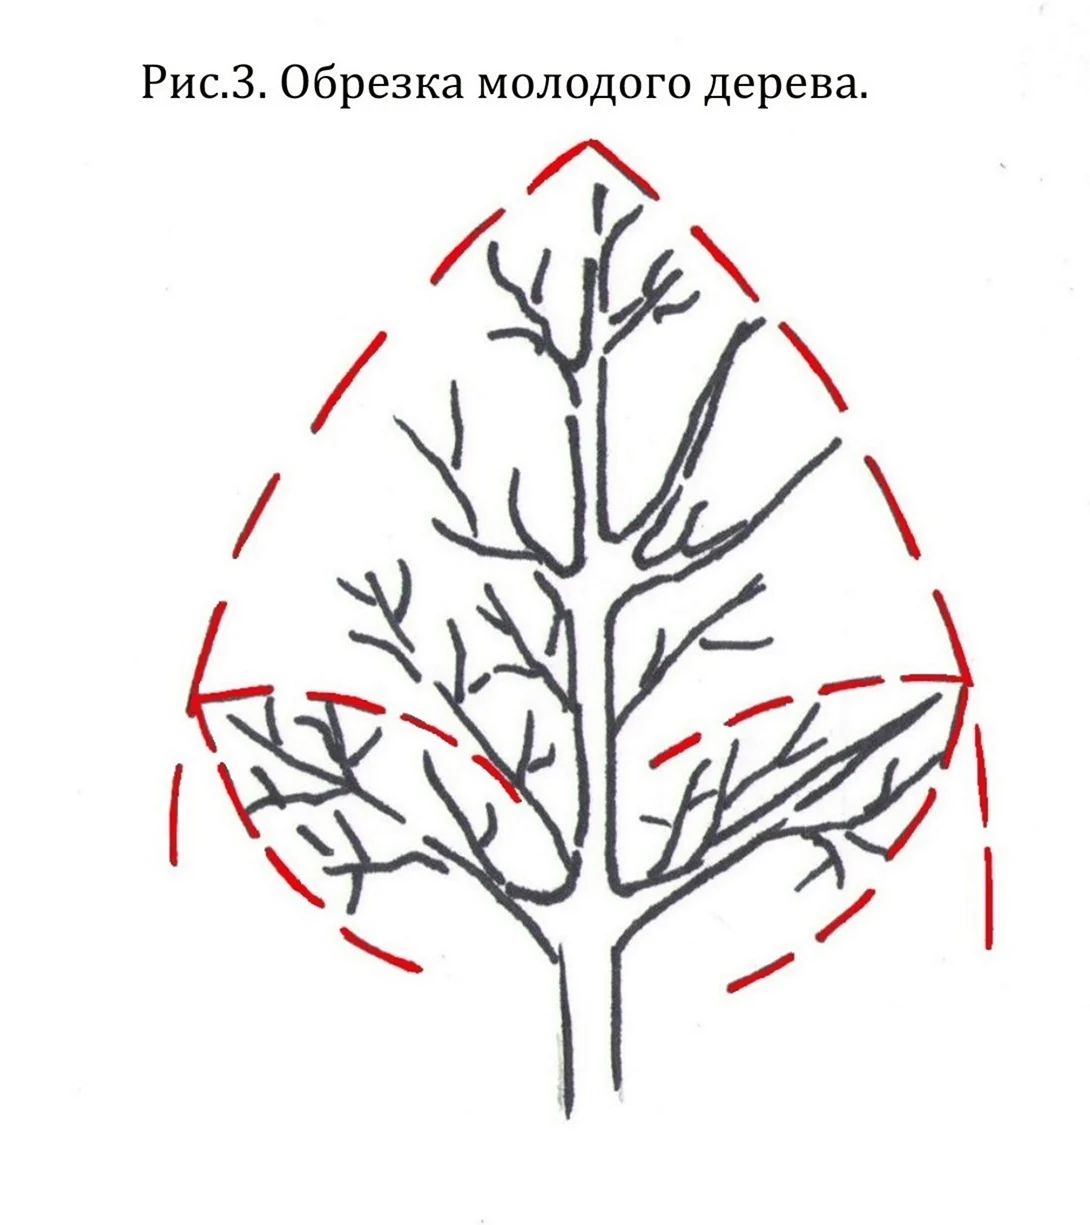 Схема обрезки плодовых деревьев весной. Картинка